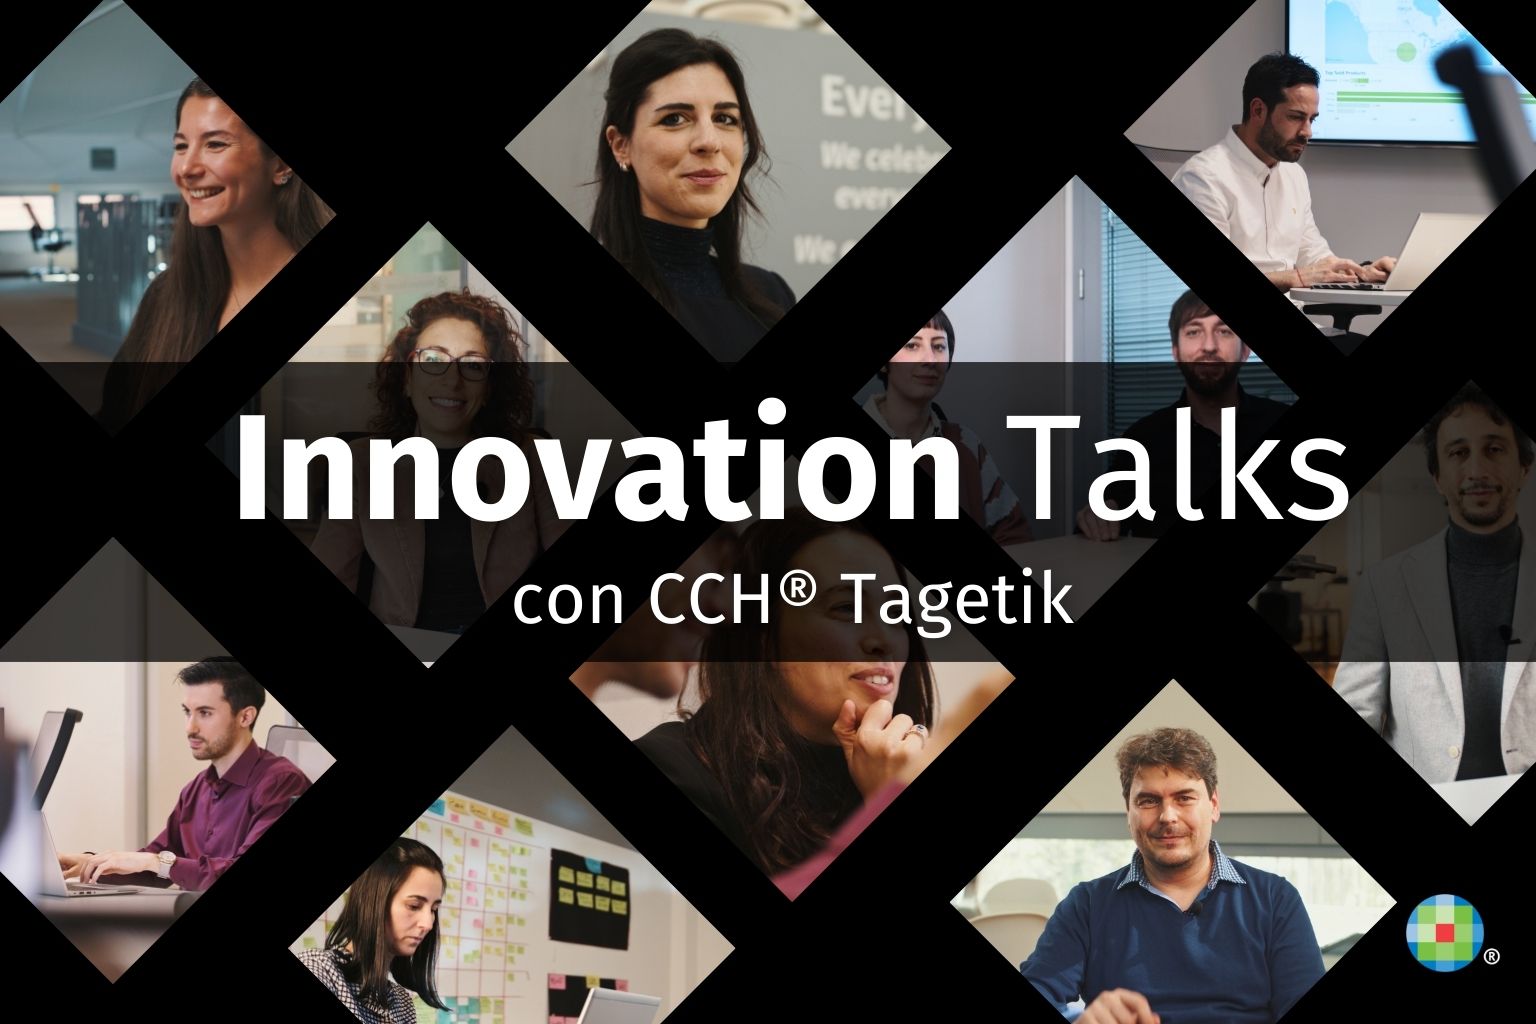 Innovation talks con CCH Tagetik